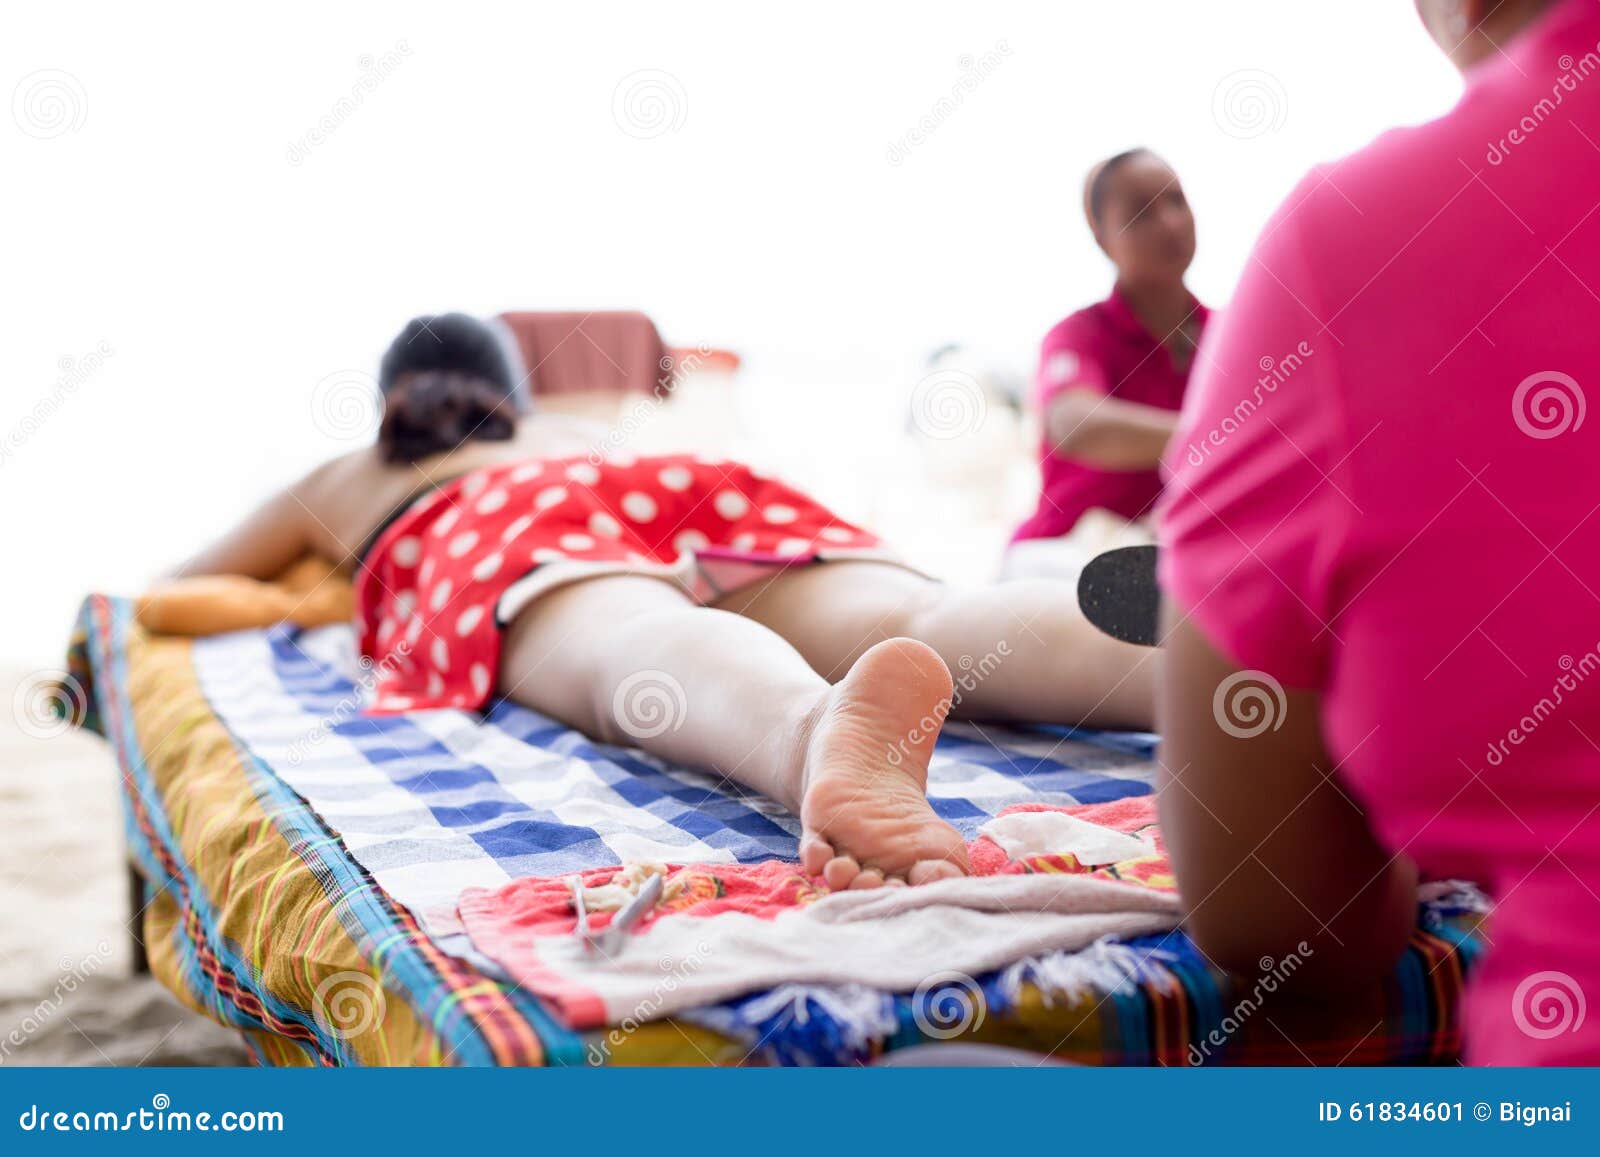 Сын делает мама массаж видео. Маме массаж ног на пляже. Дочь массирует маме ноги на пляже. Сын массирует мамы и ноги на пляже. Сын делает маме массаж на пляже.